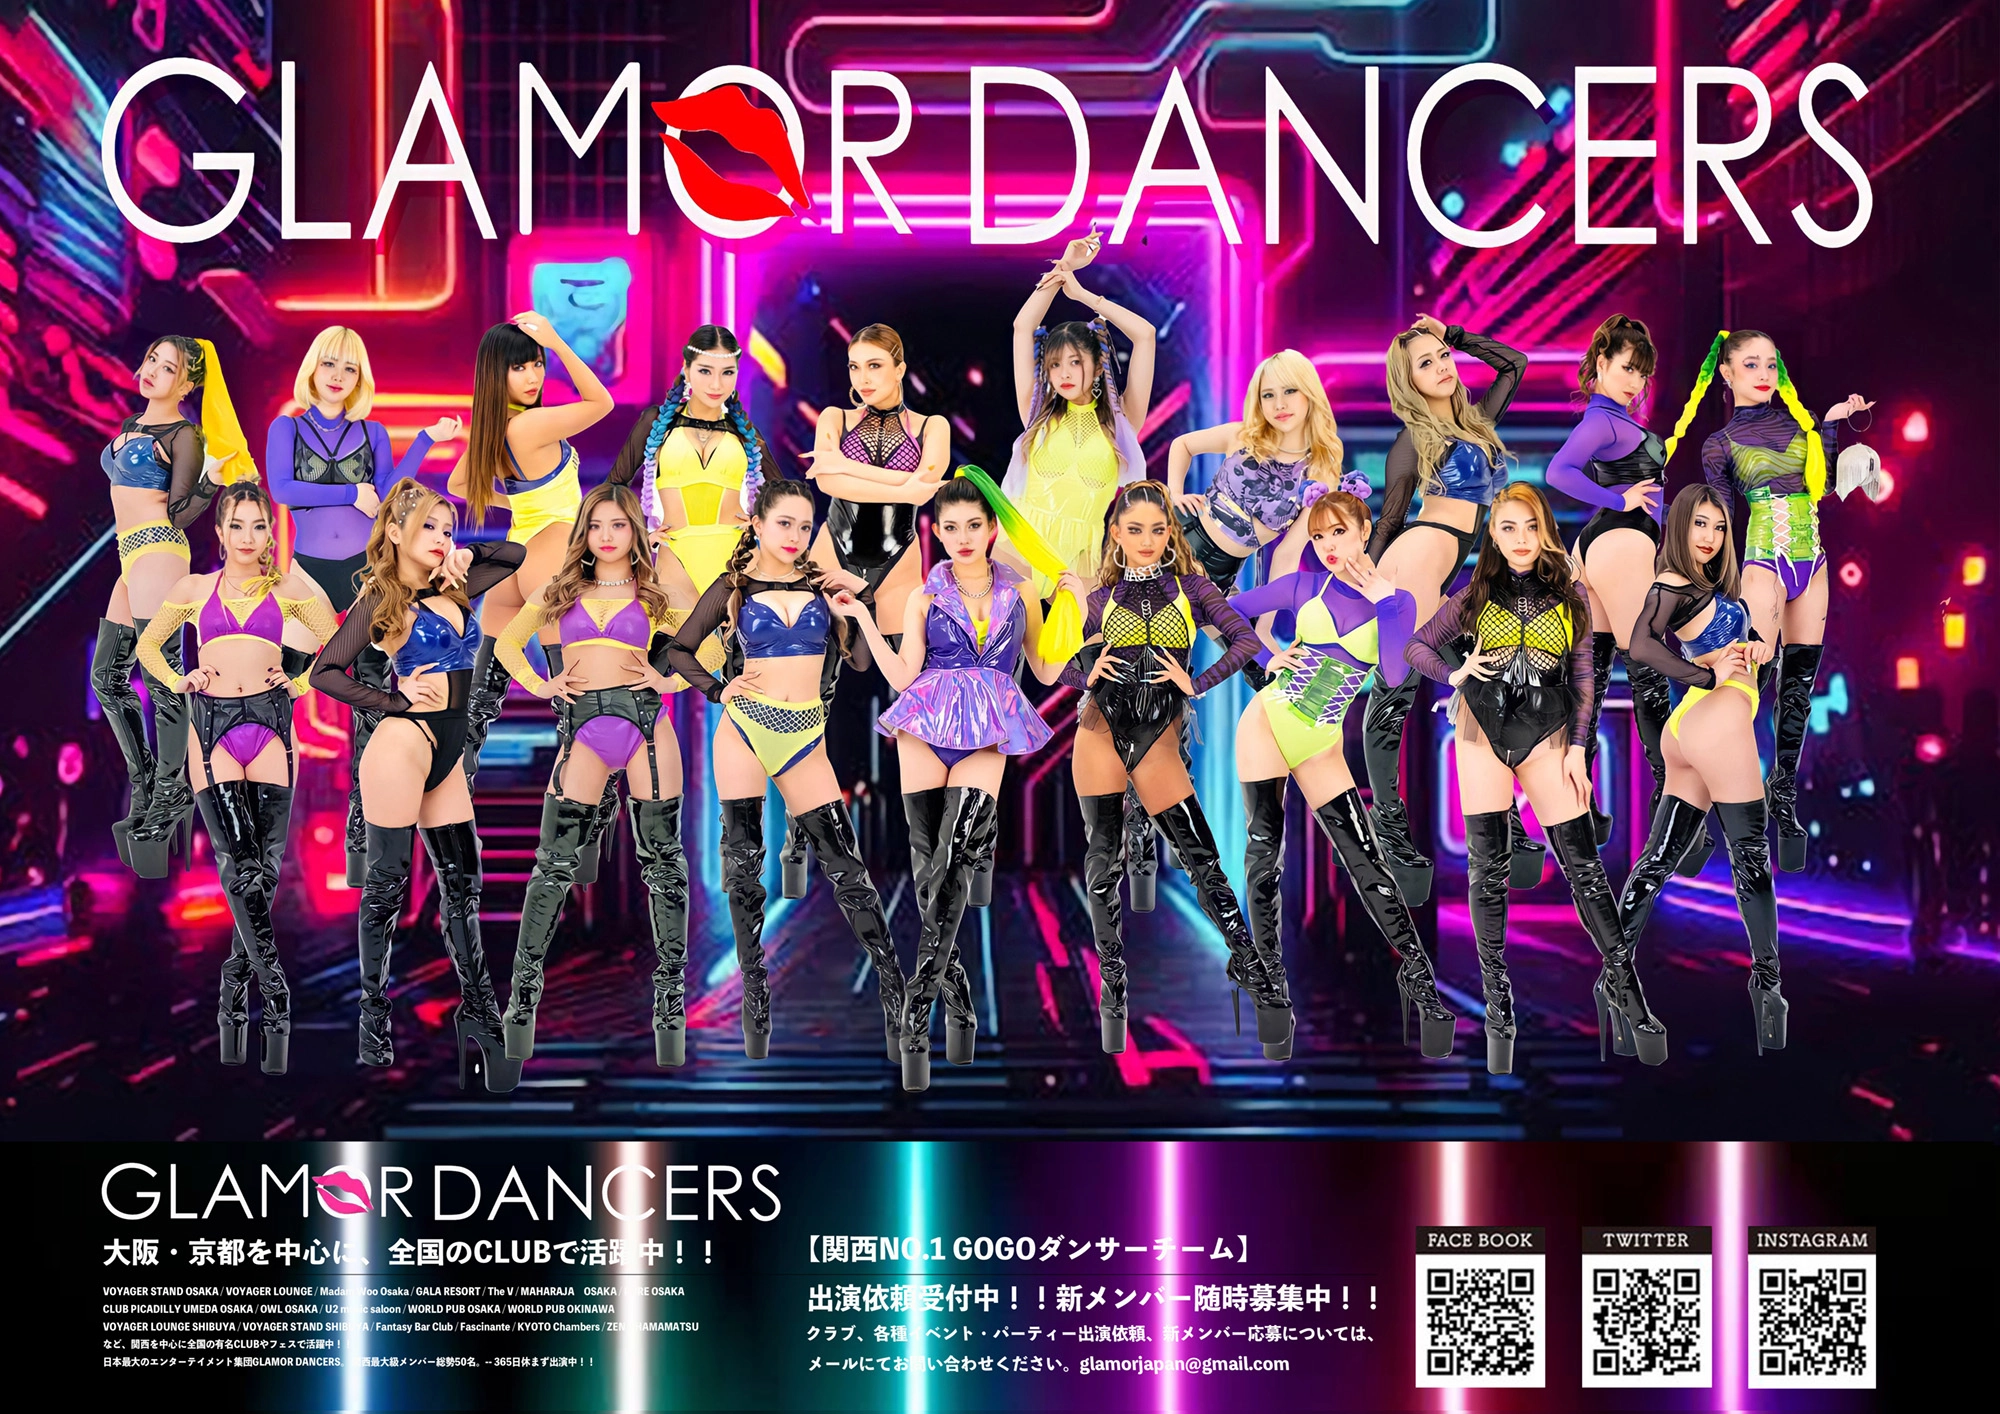 大阪・京都を中心に活動する総勢50名所属の魅惑的なダンスエンターテイメントチームのGLAMOR DANCERS